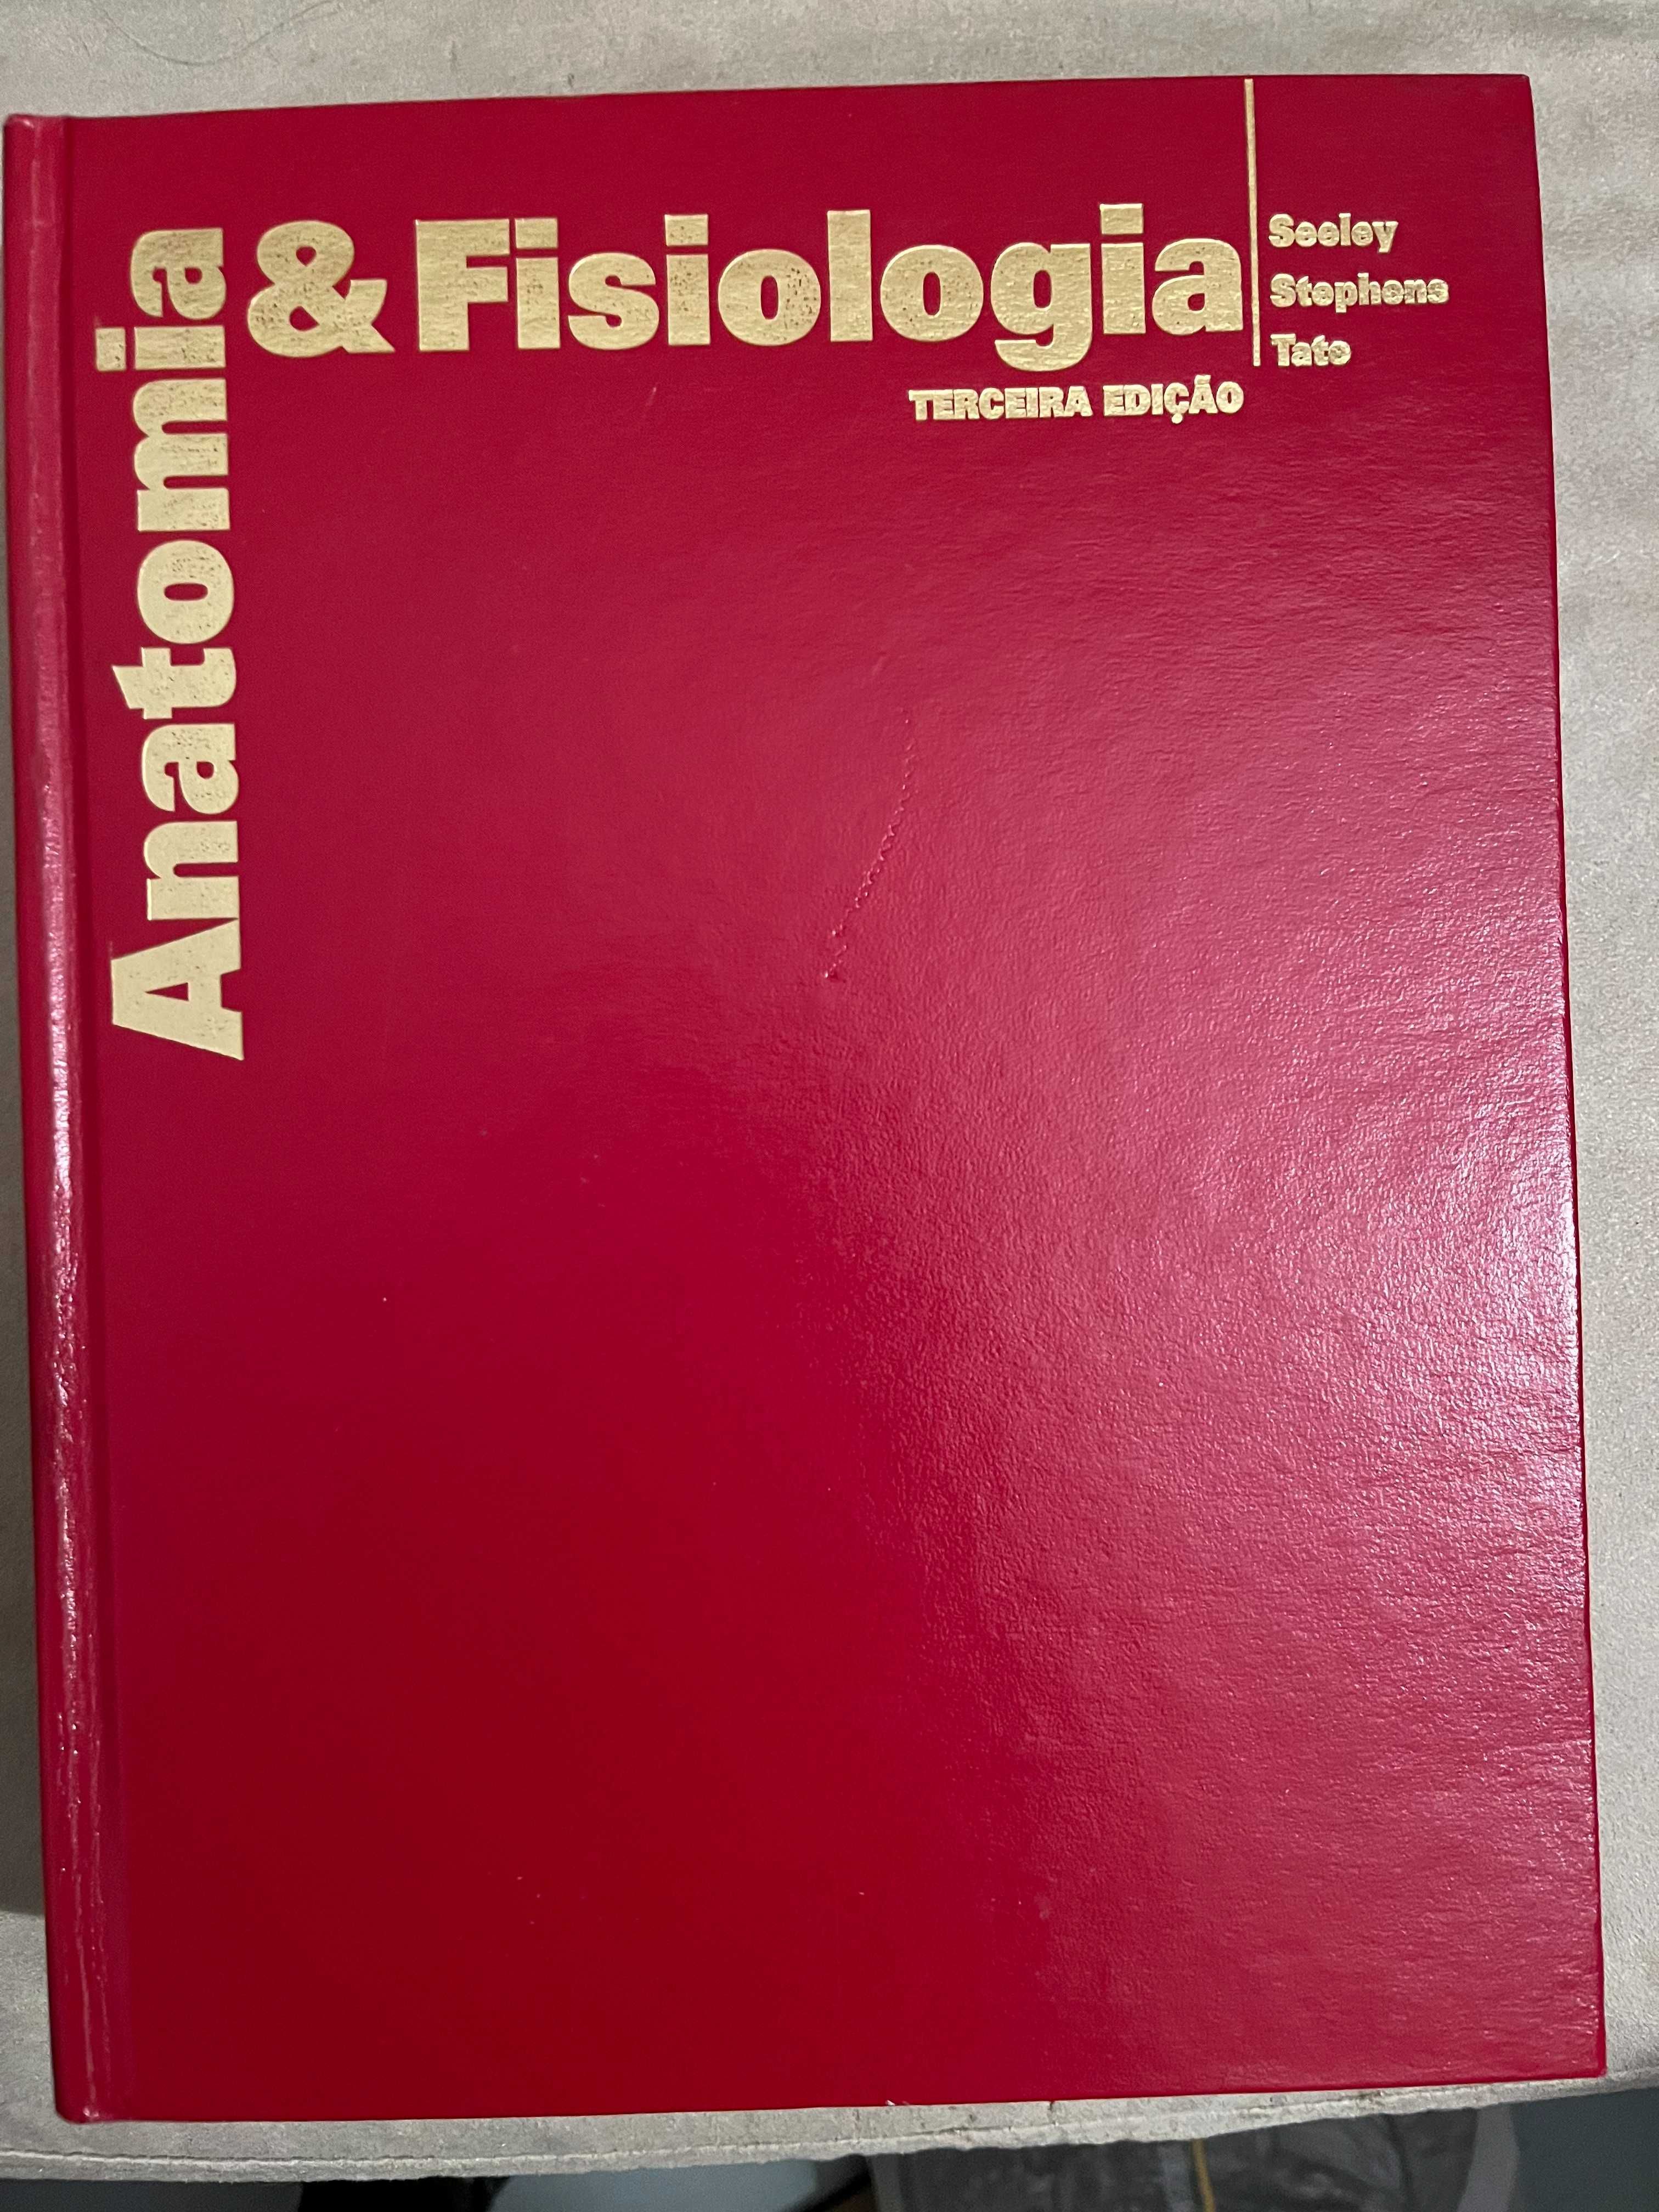 Enfermagem: Anatomia e Fisiologia, 3ª Edição